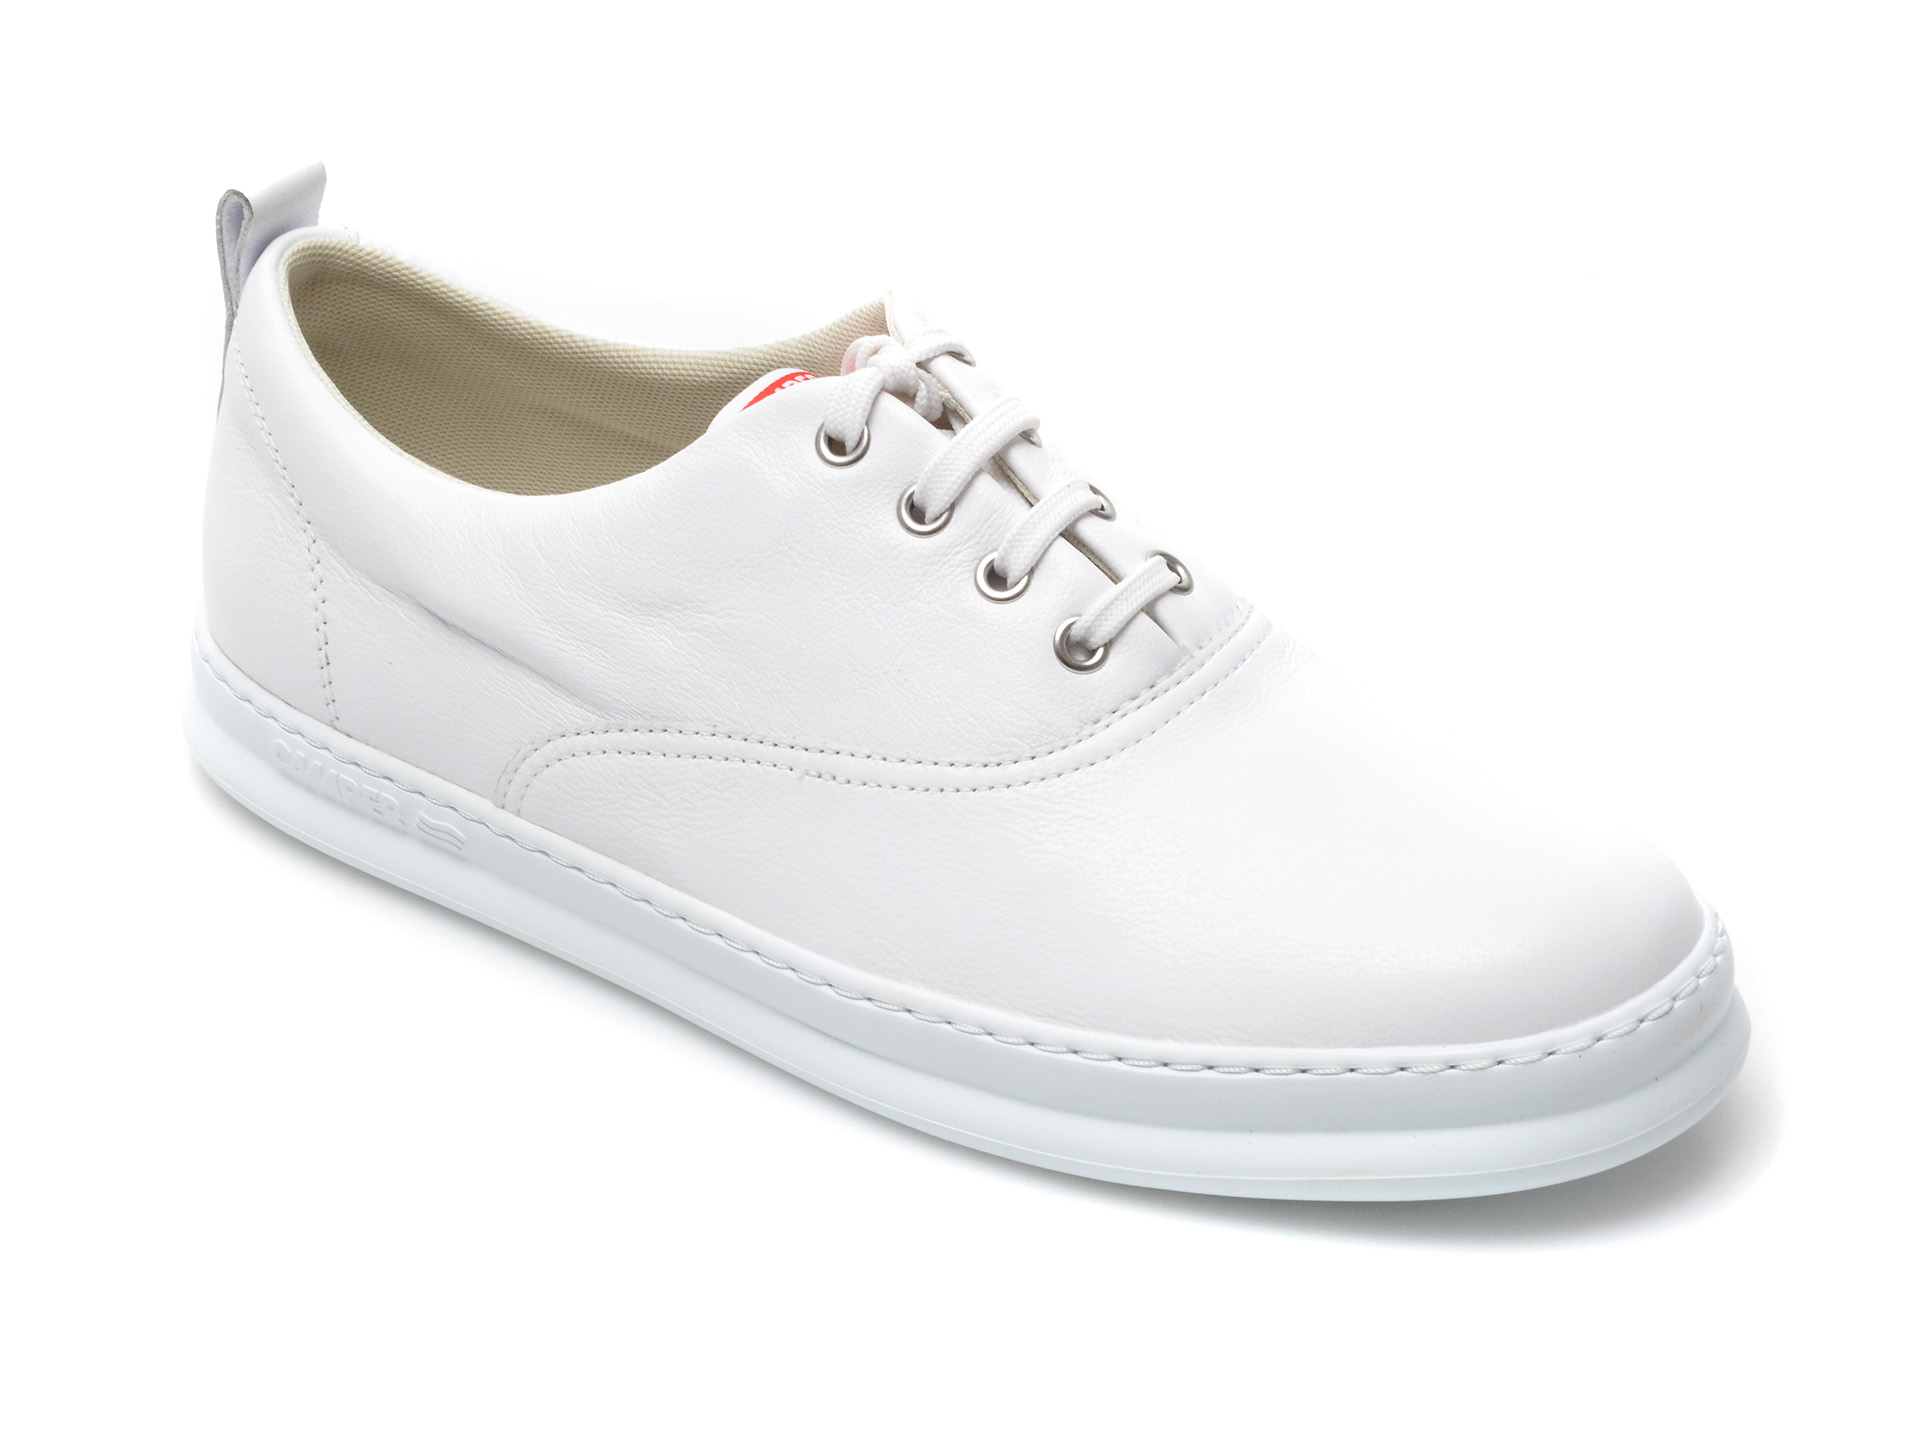 Pantofi CAMPER albi, K100803, din piele naturala